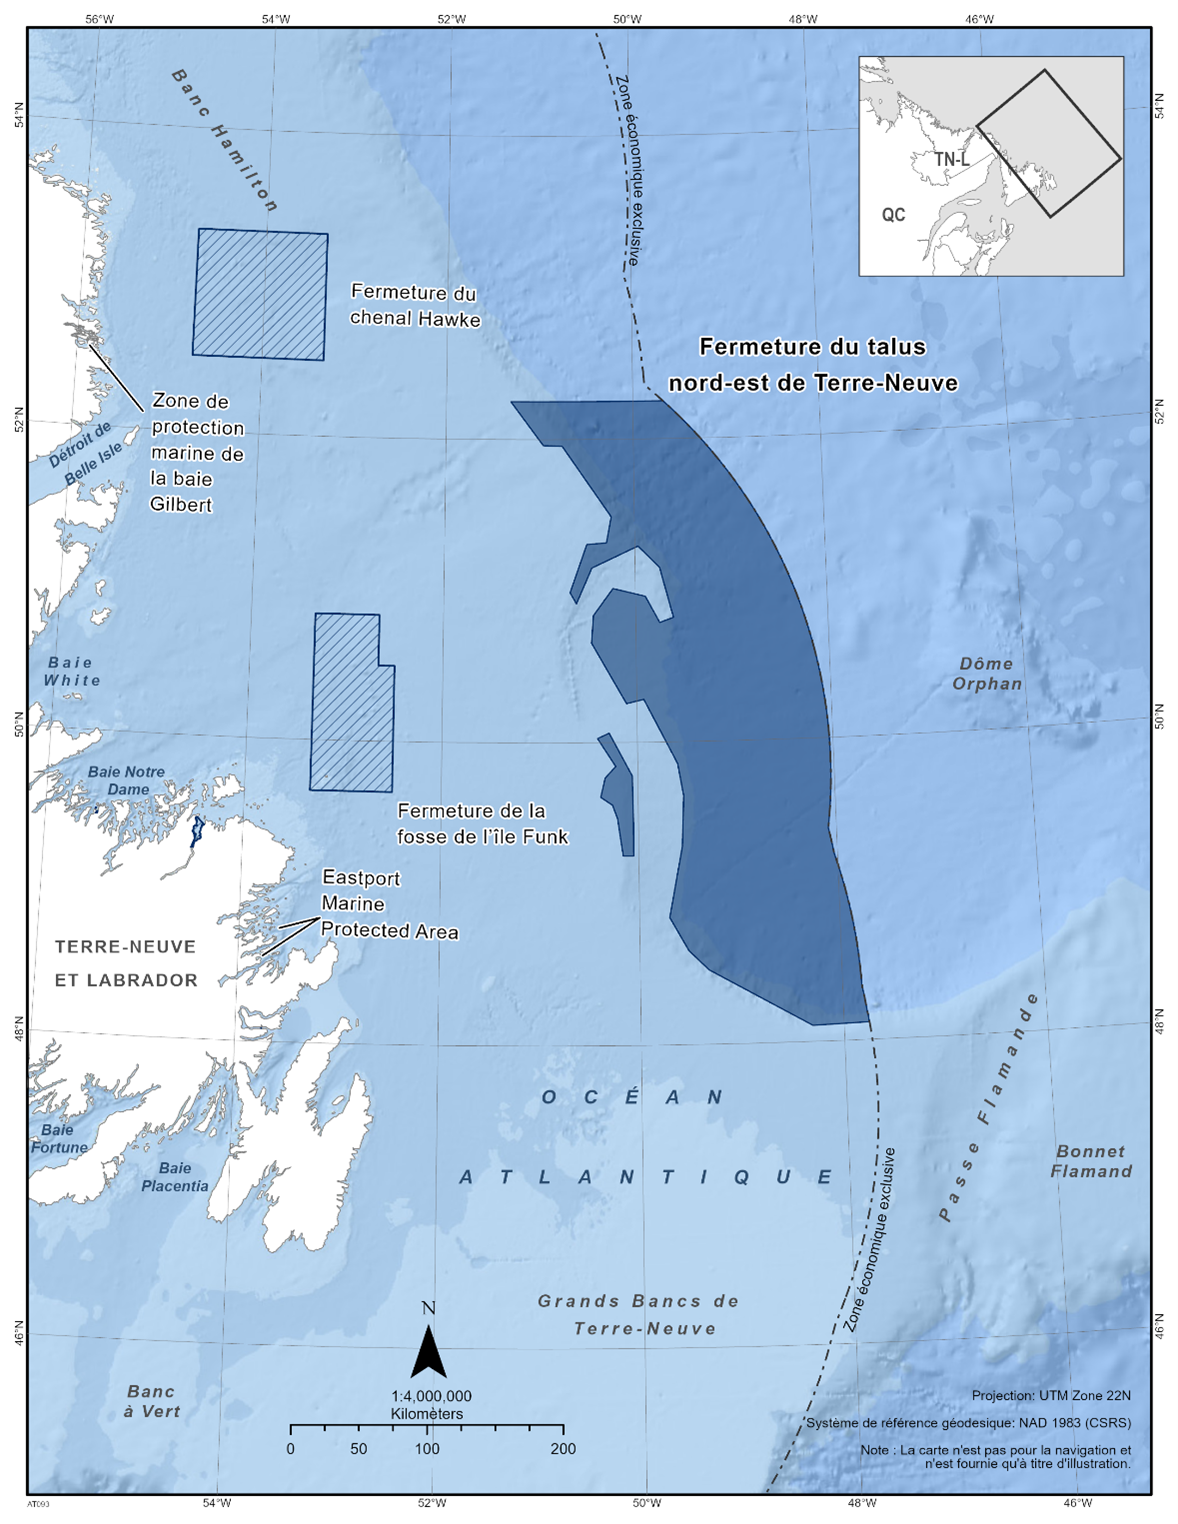 Carte de la fermeture du talus nord-est de Terre-Neuve en bleu foncé. La carte montre également d'autres refuges marins à proximité avec des lignes diagonales bleu foncé (fermeture du chenal Hawke et fermeture de l'île Funk). 